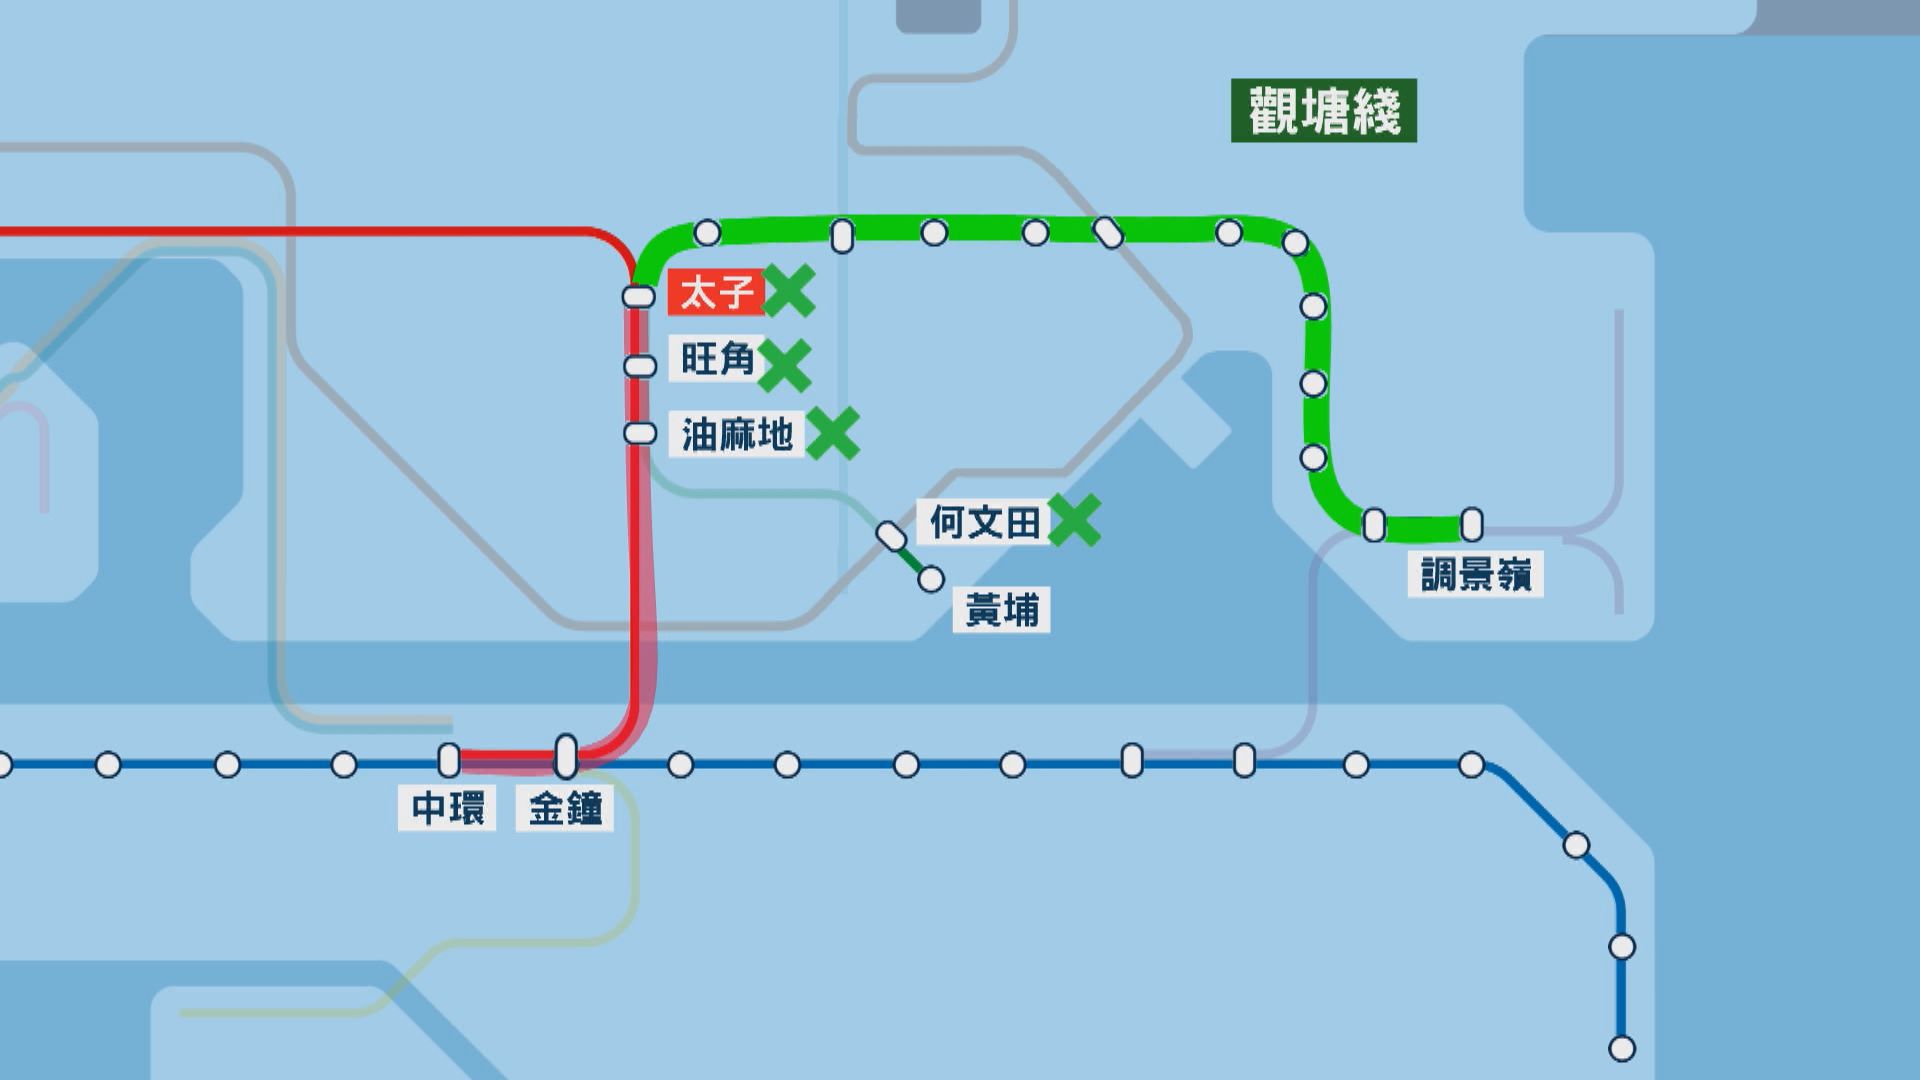 觀塘綫太子至何文田7.28列車停運一日 港鐵提供8或30X替代路線